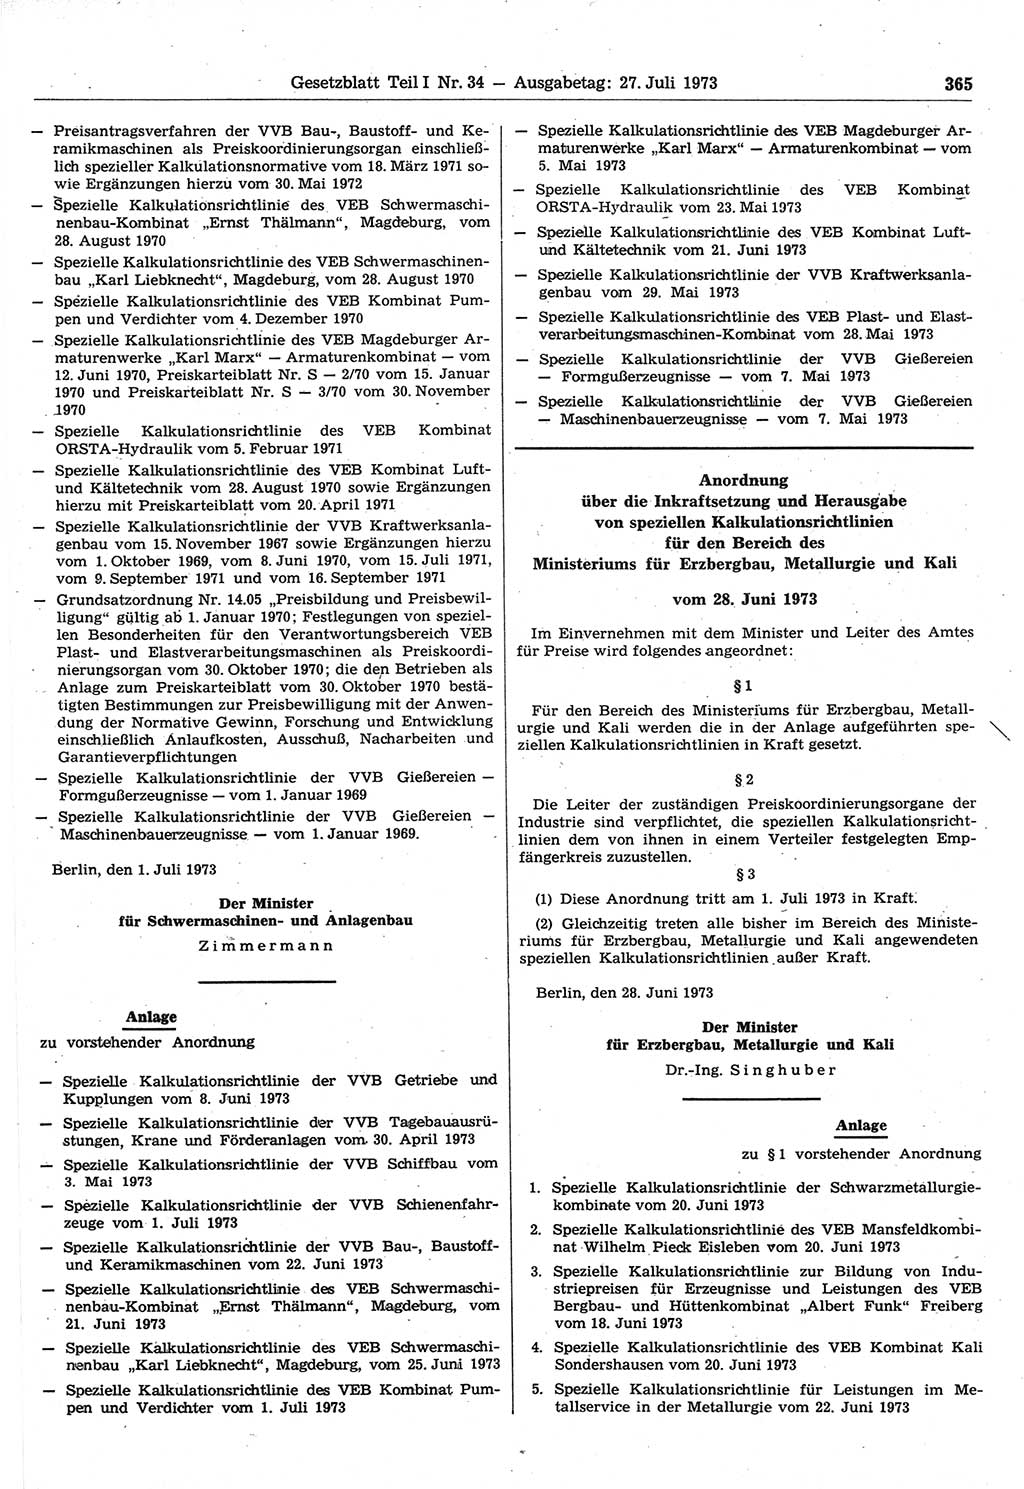 Gesetzblatt (GBl.) der Deutschen Demokratischen Republik (DDR) Teil Ⅰ 1973, Seite 365 (GBl. DDR Ⅰ 1973, S. 365)